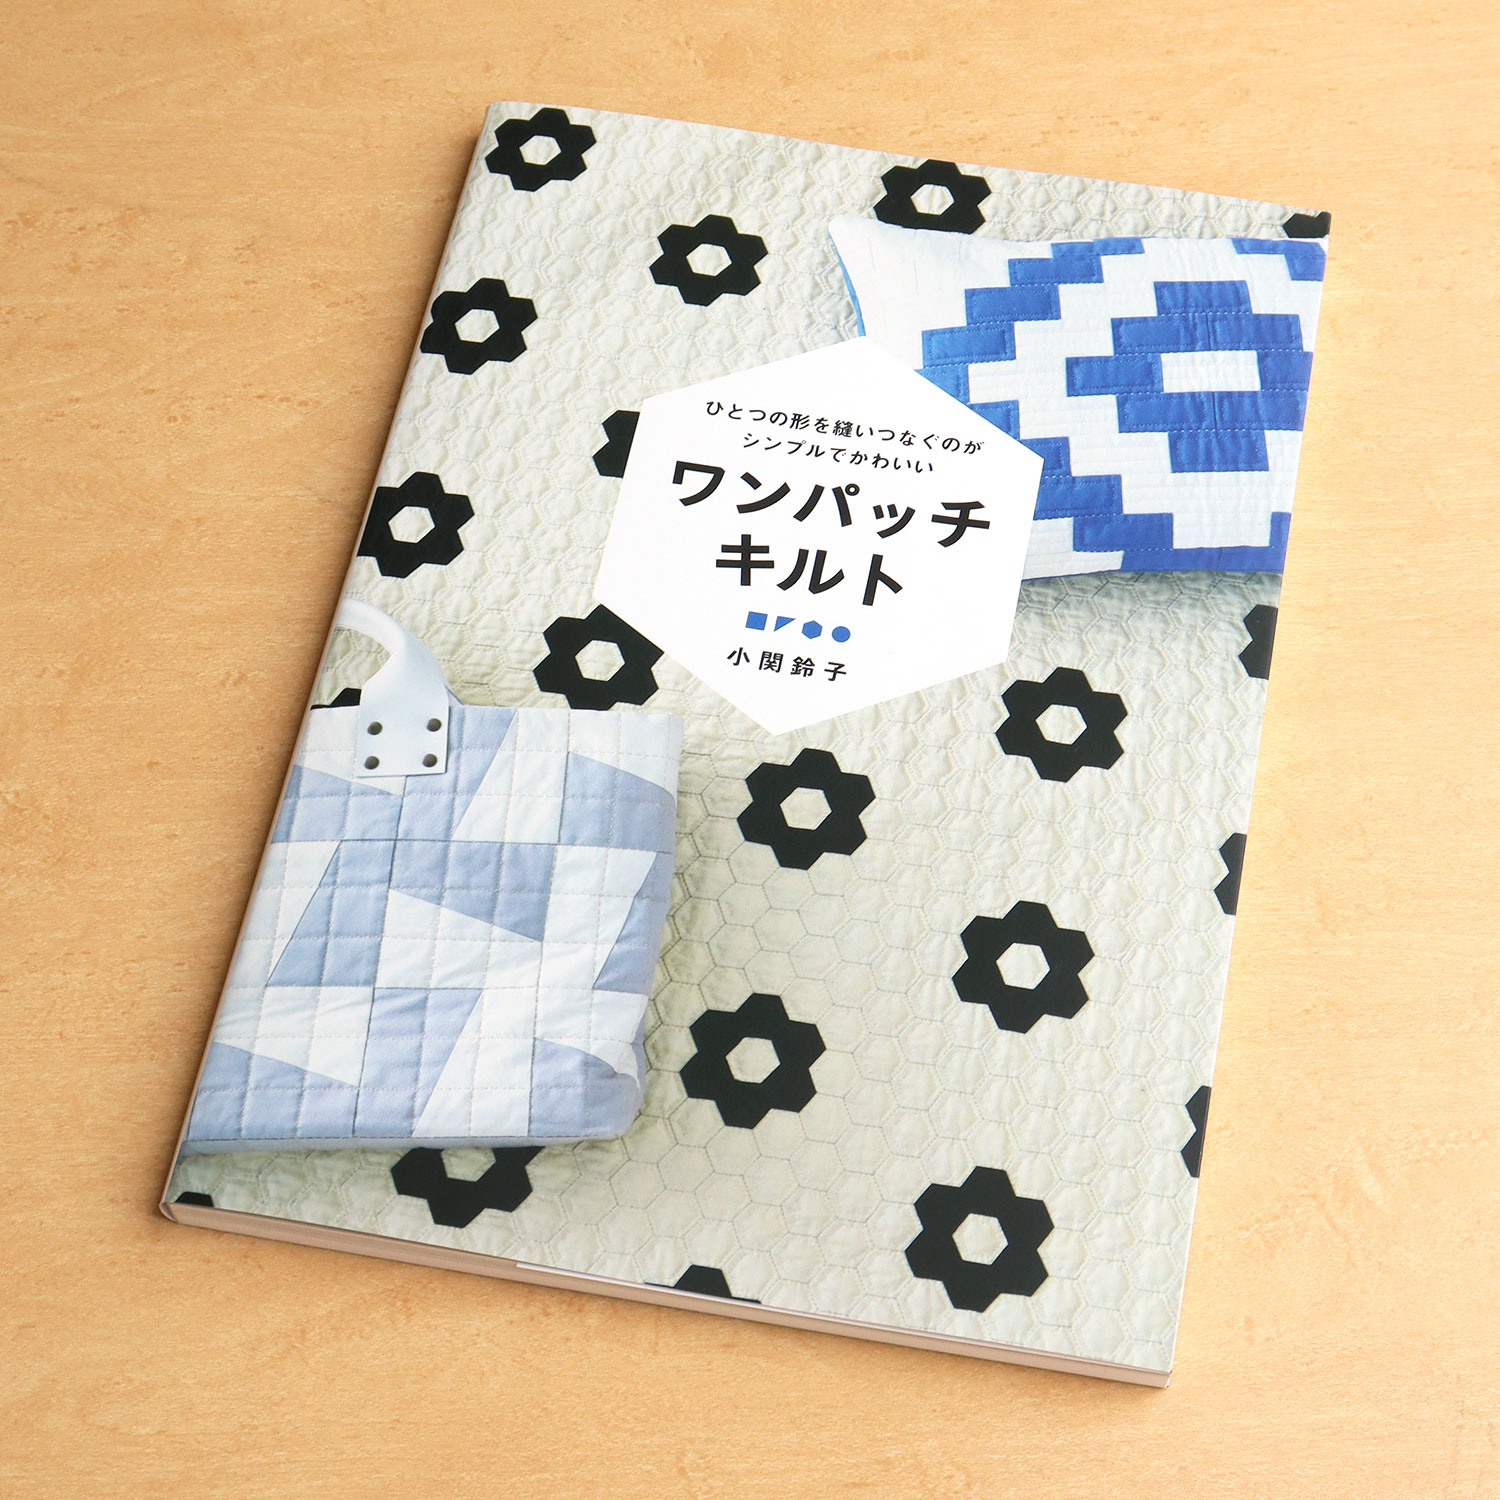 GRF13464 ひとつの形を縫いつなぐのがシンプルでかわいい ワンパッチキルト 著)小関鈴子/グラフィック社(冊)